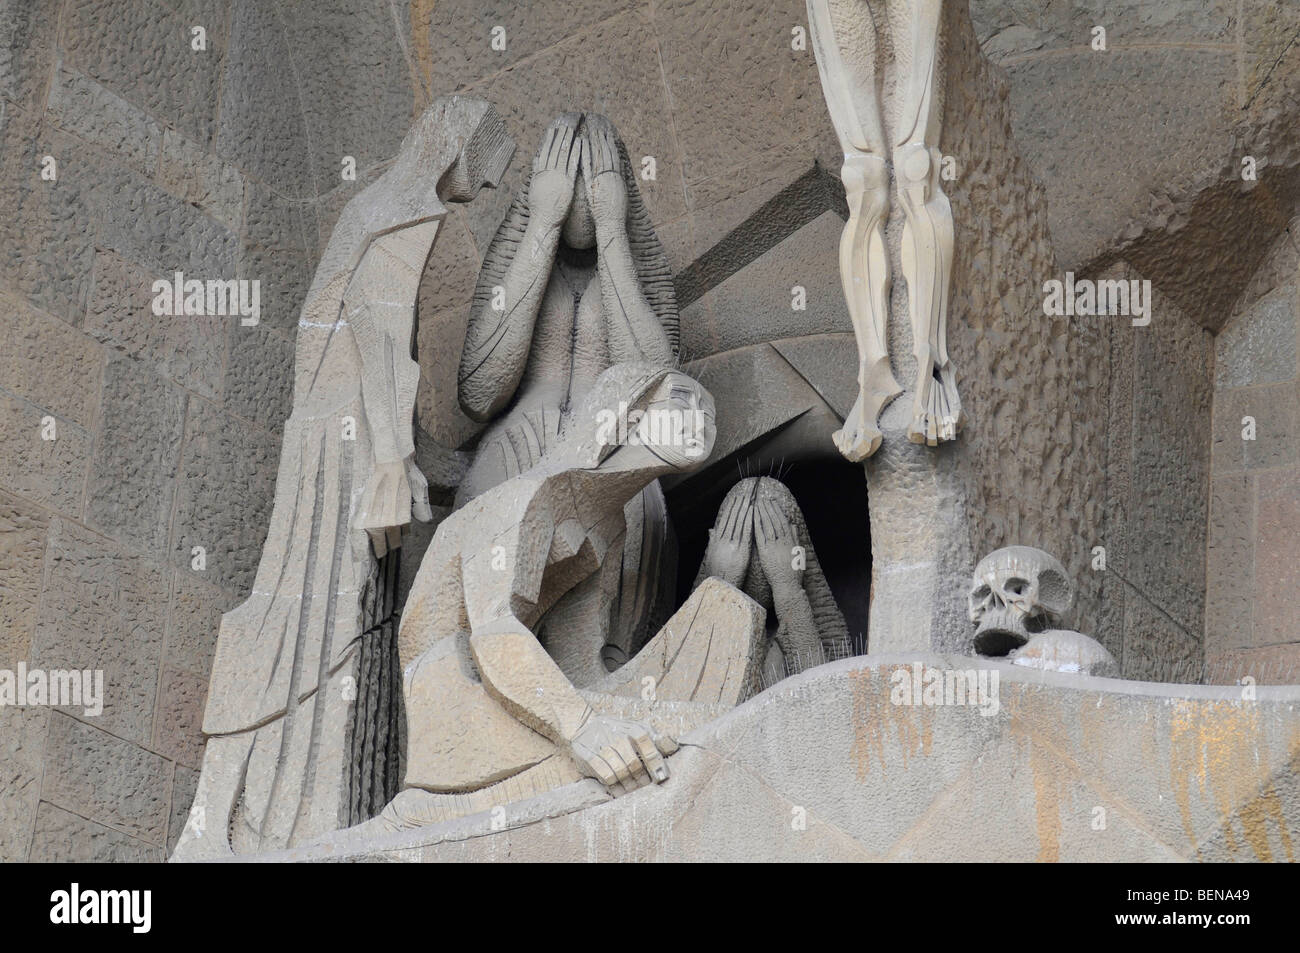 Dettagli di sculture religiose sulla facciata della Sagrada Familia, la cattedrale incompiuto di Antoni Gaudì a Barcellona. Foto Stock